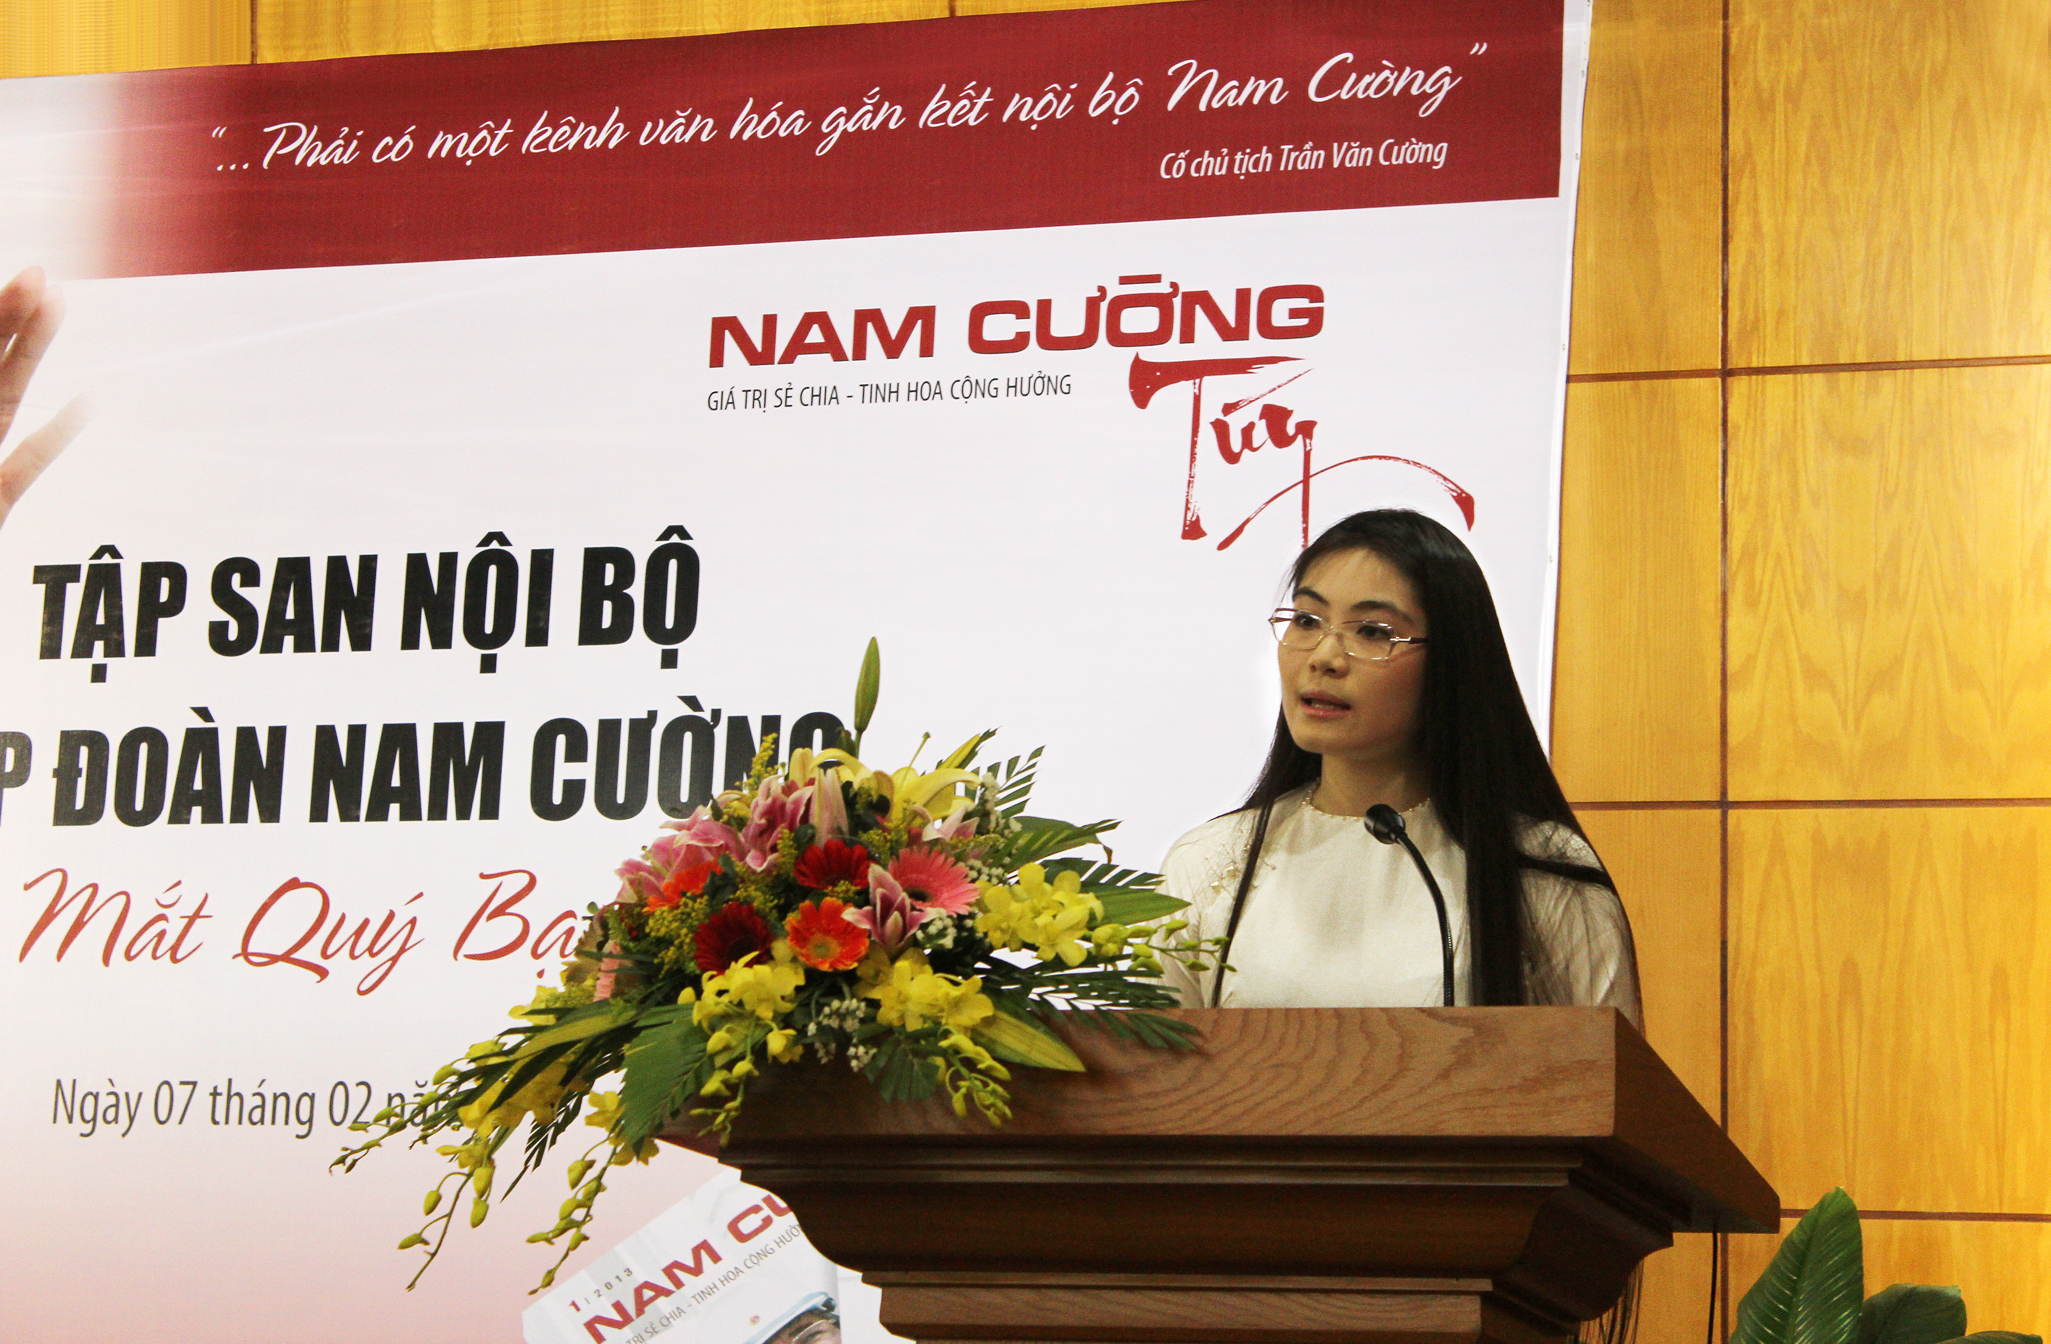 Trần Thị Quỳnh Ngọc sinh năm 1981. Cô là con gái duy nhất của doanh nhân quá cố Trần Văn Cường và Chủ tịch đương nhiệm Tập đoàn Nam Cường Lê Thị Thúy Ngà.